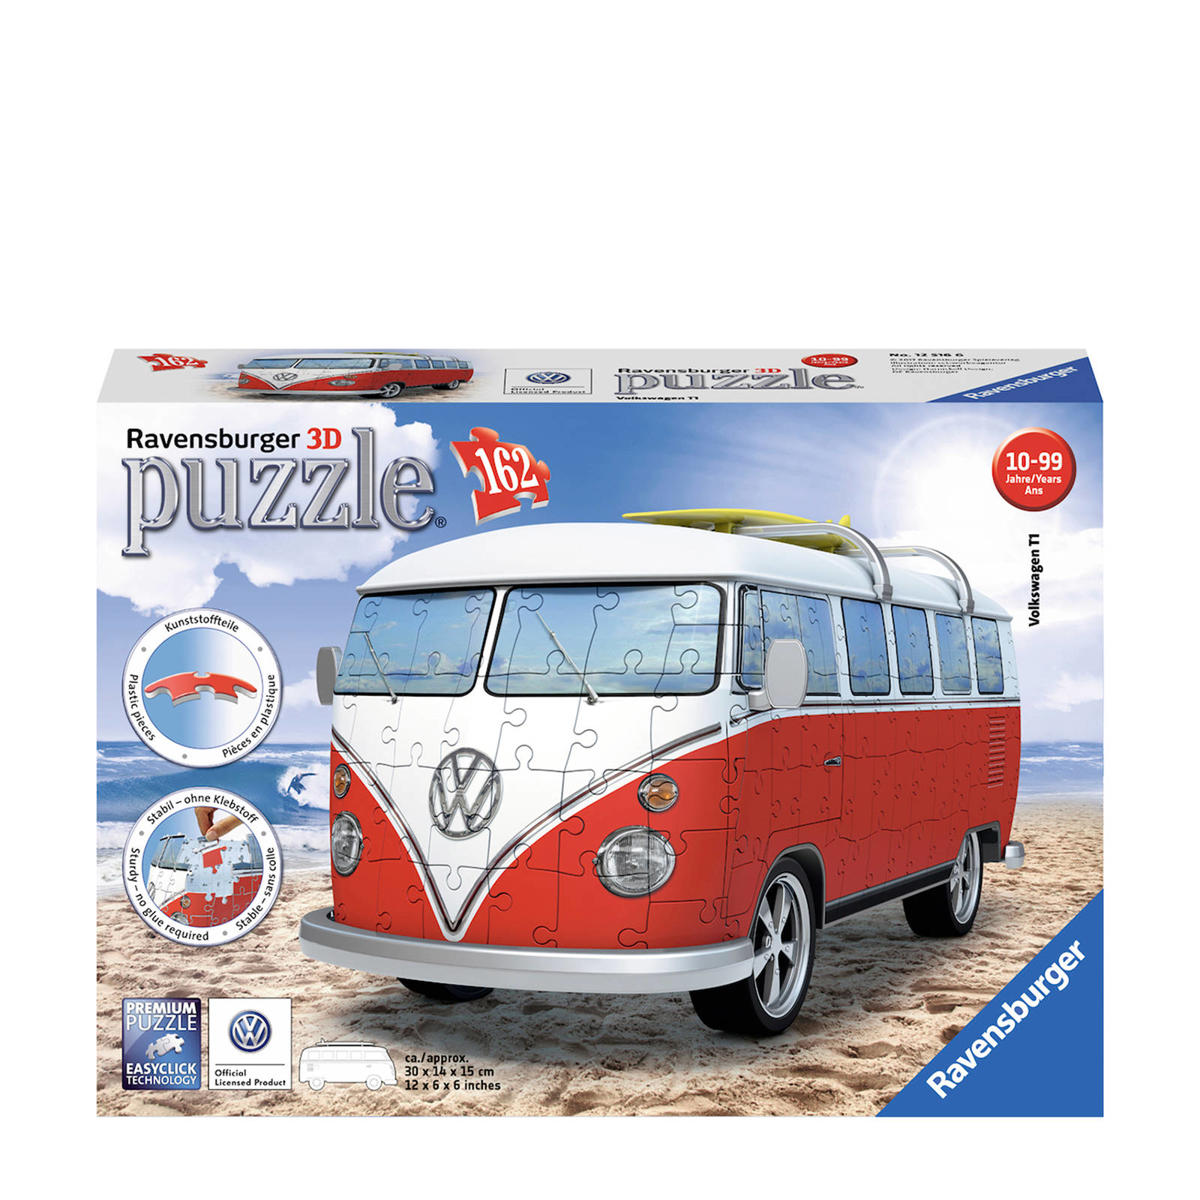 Trots lassen Ideaal Ravensburger Volkswagen bus 3D puzzel 162 stukjes | wehkamp